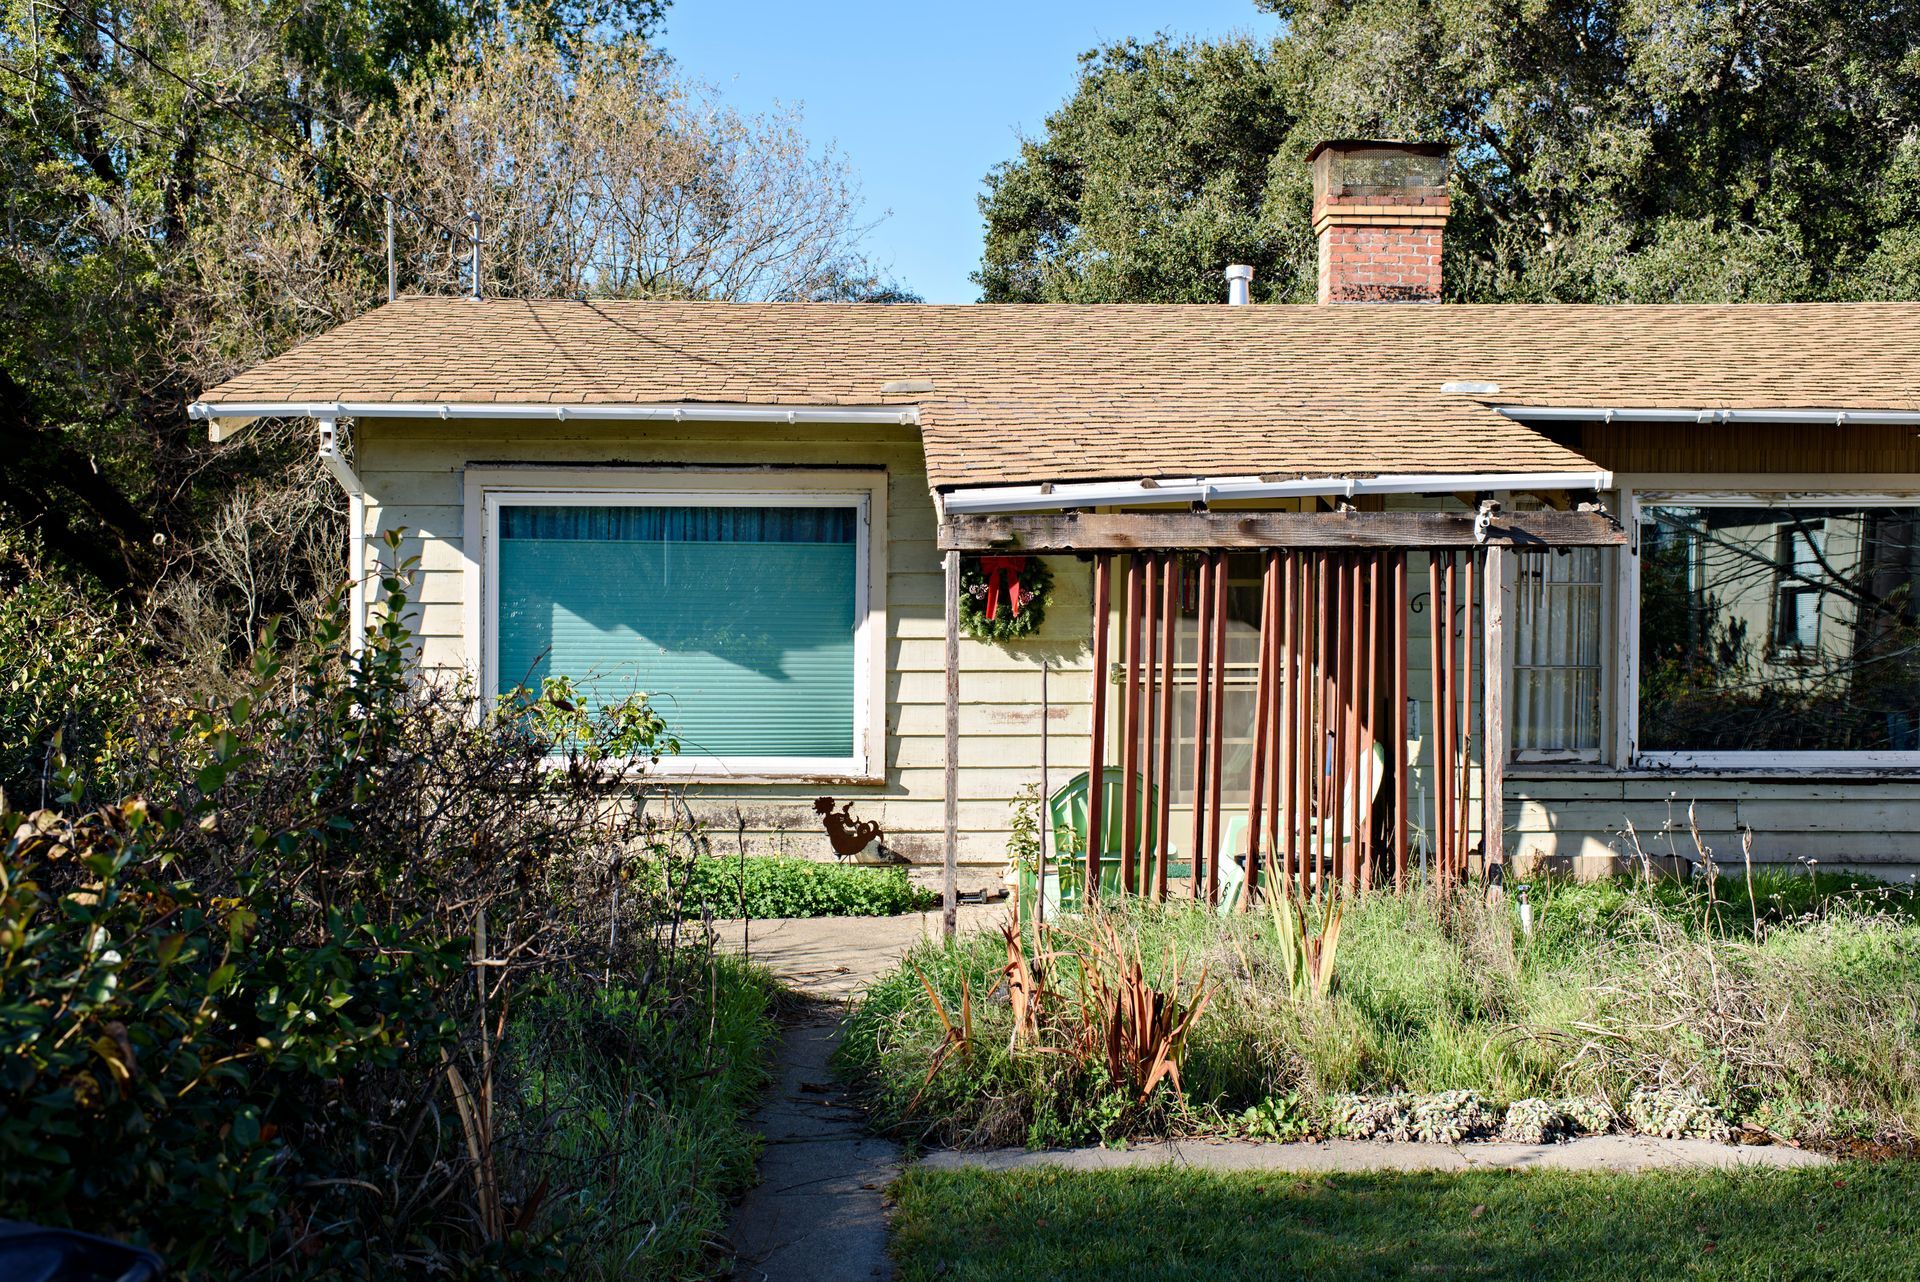 House exterior with siding trim